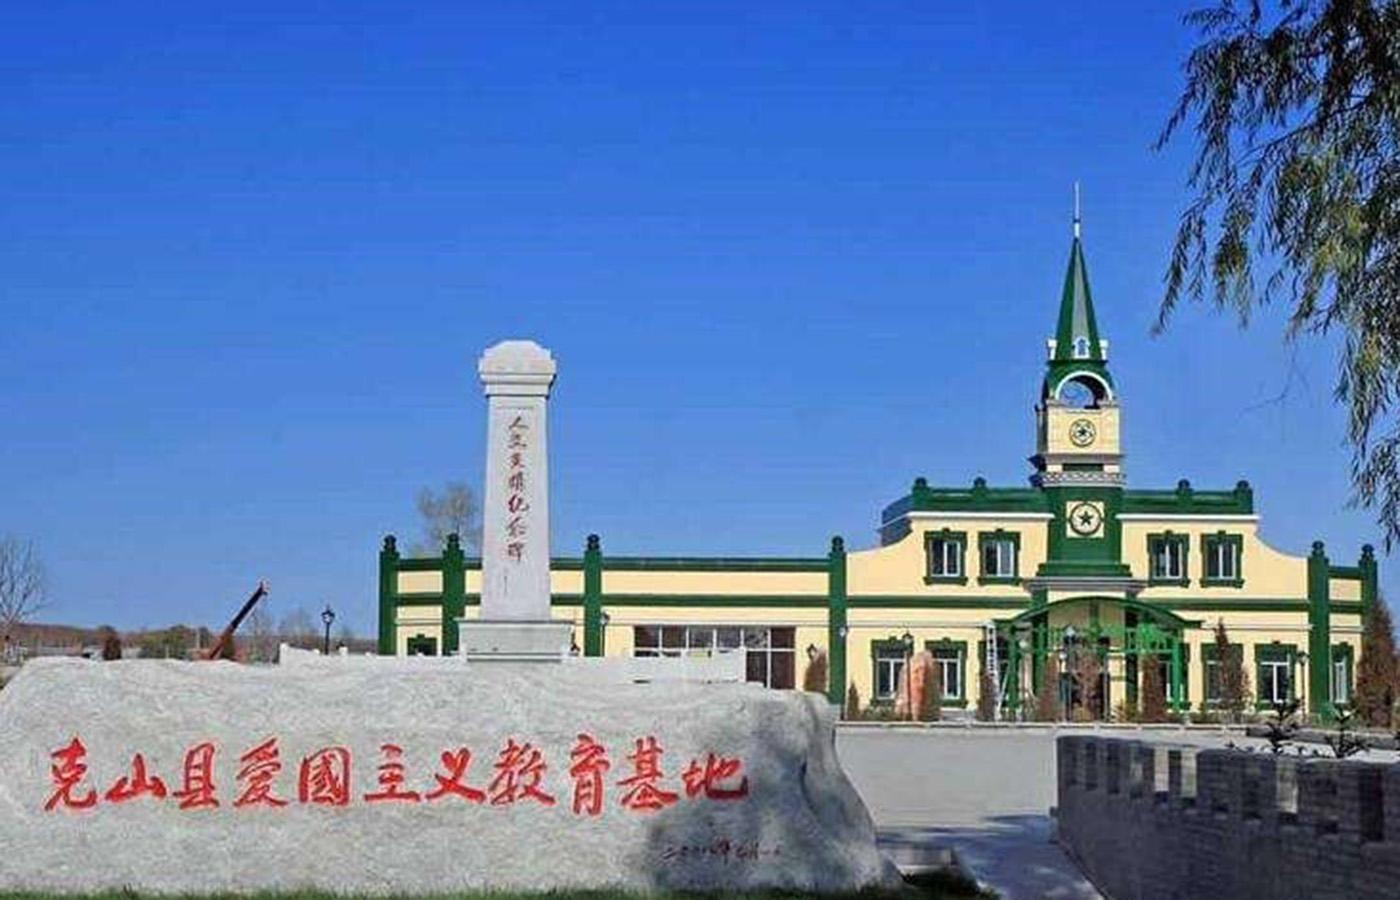 毛岸青纪念馆坐落于黑龙江省齐齐哈尔市克山县西大街爱国主义教育基地内，占地面积2.6万平方米，建筑面积1669平方米，于2008年10月9日落成，并于11月23日开馆。